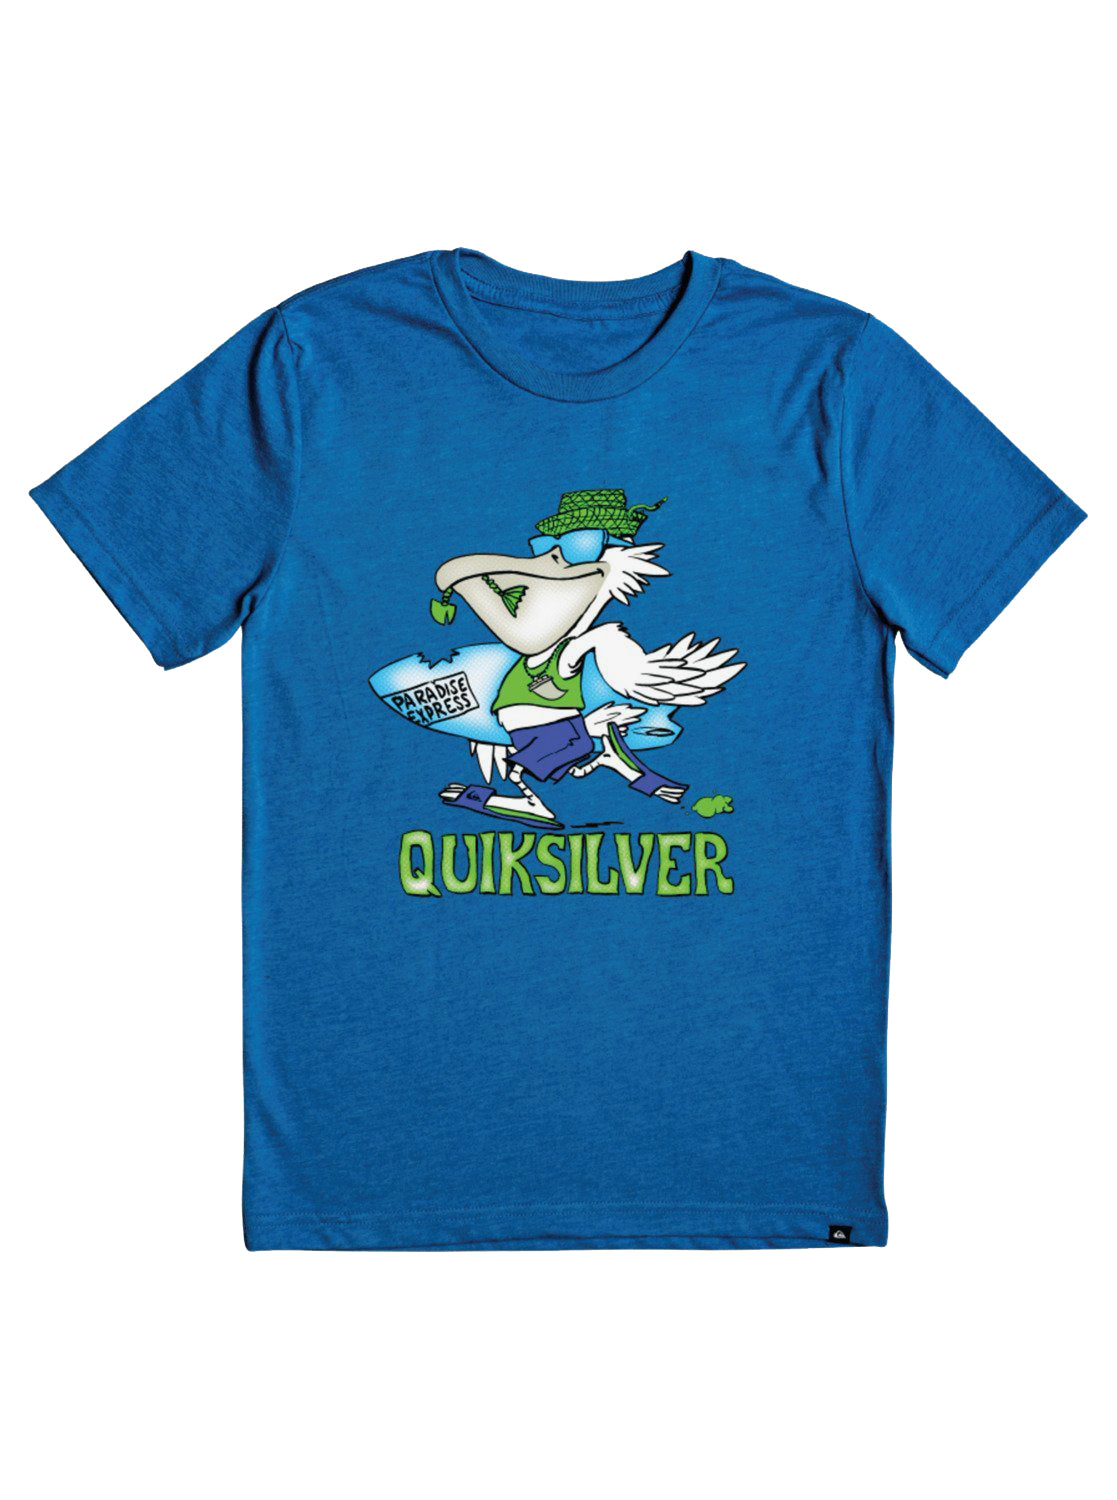 Quiksilver Kids Pelican Shred SS Tee BQVH 5